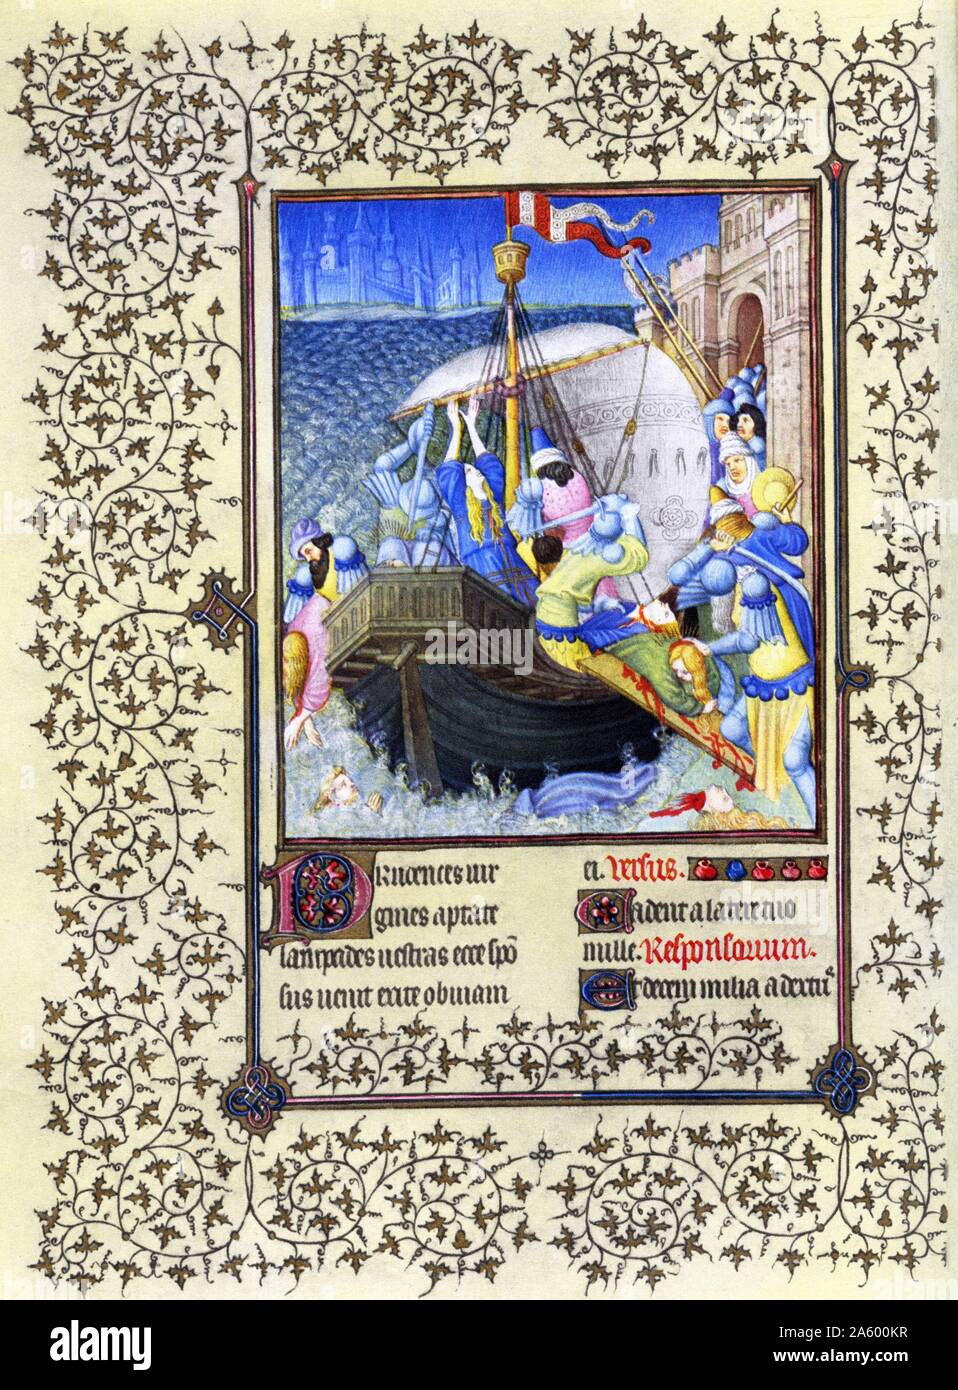 Beleuchtung abbildenden St. Ursula aus den Belles Heures von Jean de France, Duc de Berry (schöne Stunden) eine frühe 15. Jahrhundert beleuchtet Manuskript-Buch von Stunden. Vom 15. Jahrhundert Stockfoto